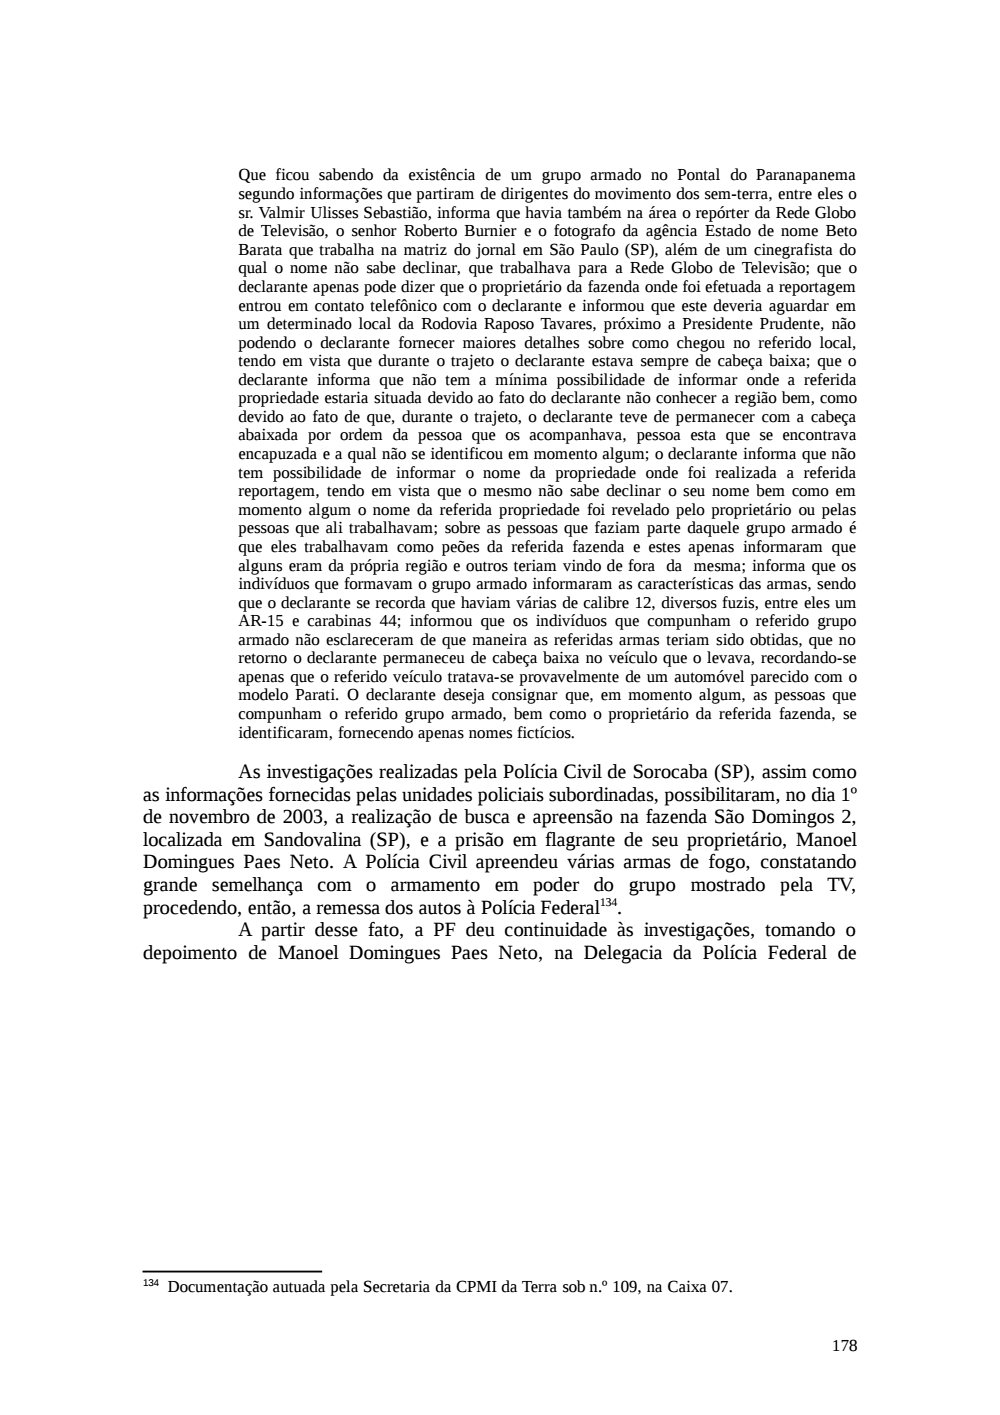 Page 178 from Relatório final da comissão